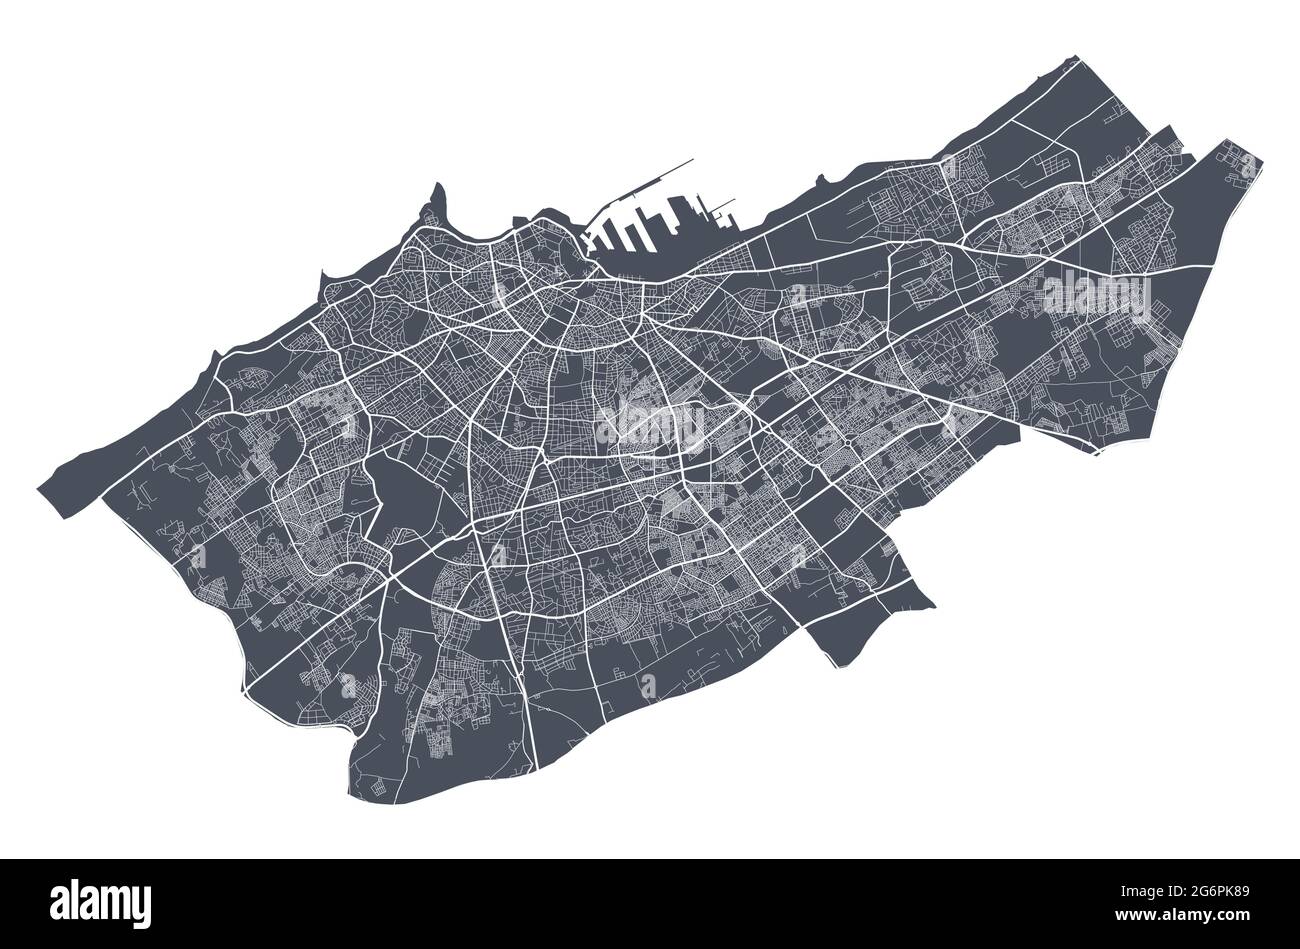 Mappa di Casablanca. Mappa vettoriale dettagliata dell'area amministrativa della città di Casablanca. Poster del paesaggio urbano vista aria metropolitana. Terra scura con strade bianche, roa Illustrazione Vettoriale